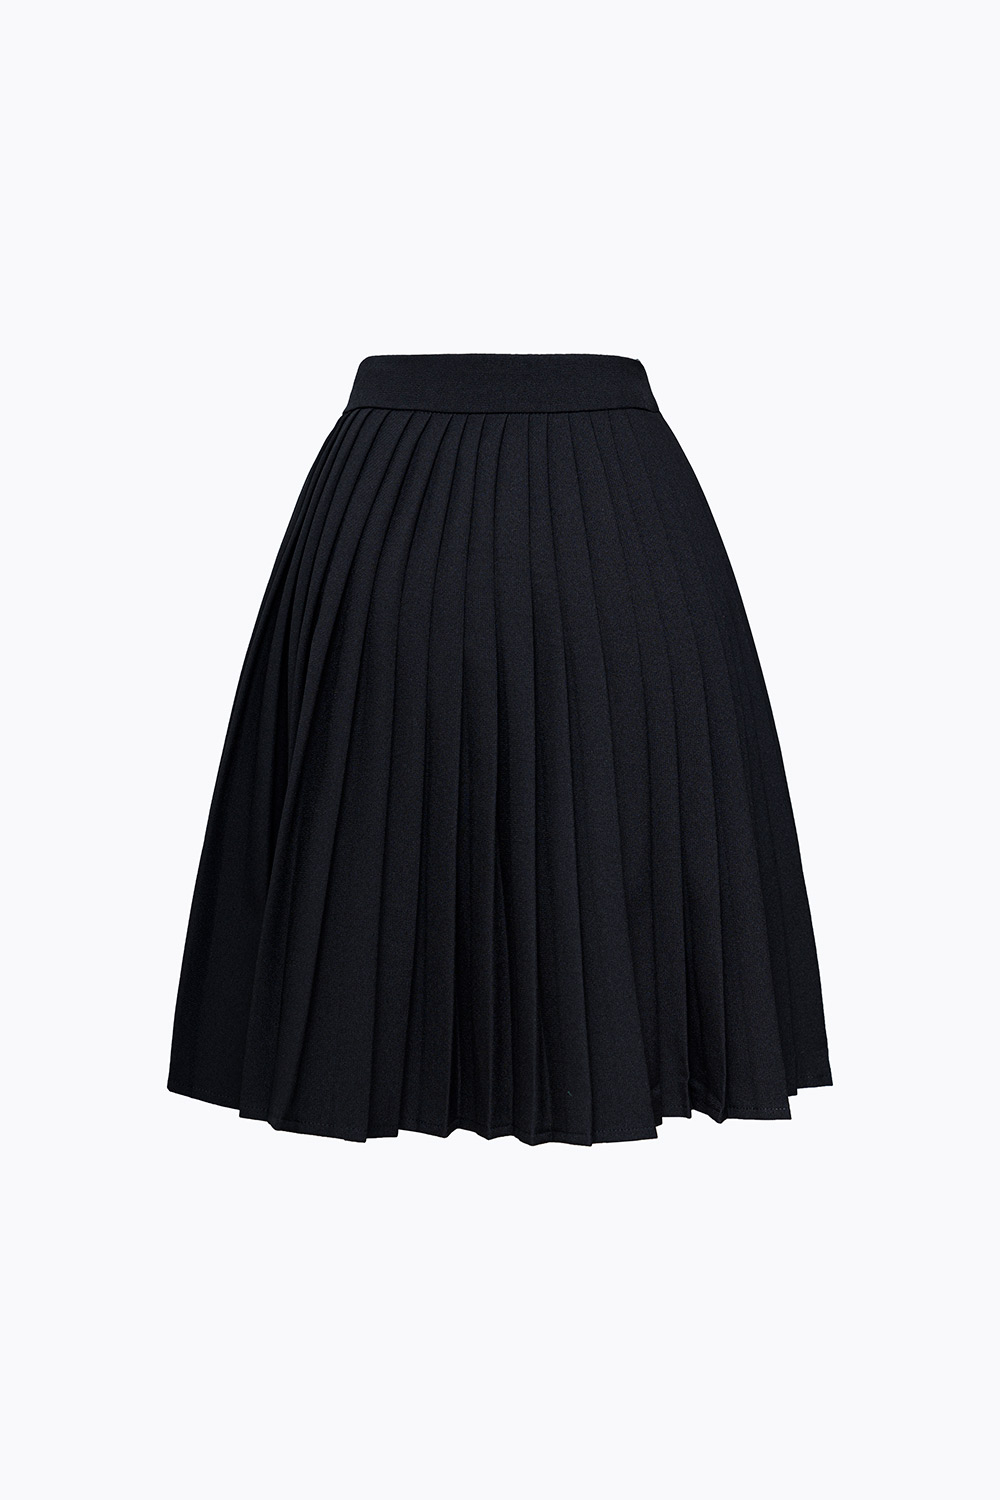 Mua Chân váy ngắn, chân váy tennis xếp ly to thời trang 2 màu đen - xám  CV055 - Đen - S tại RumHana Fashion | Tiki